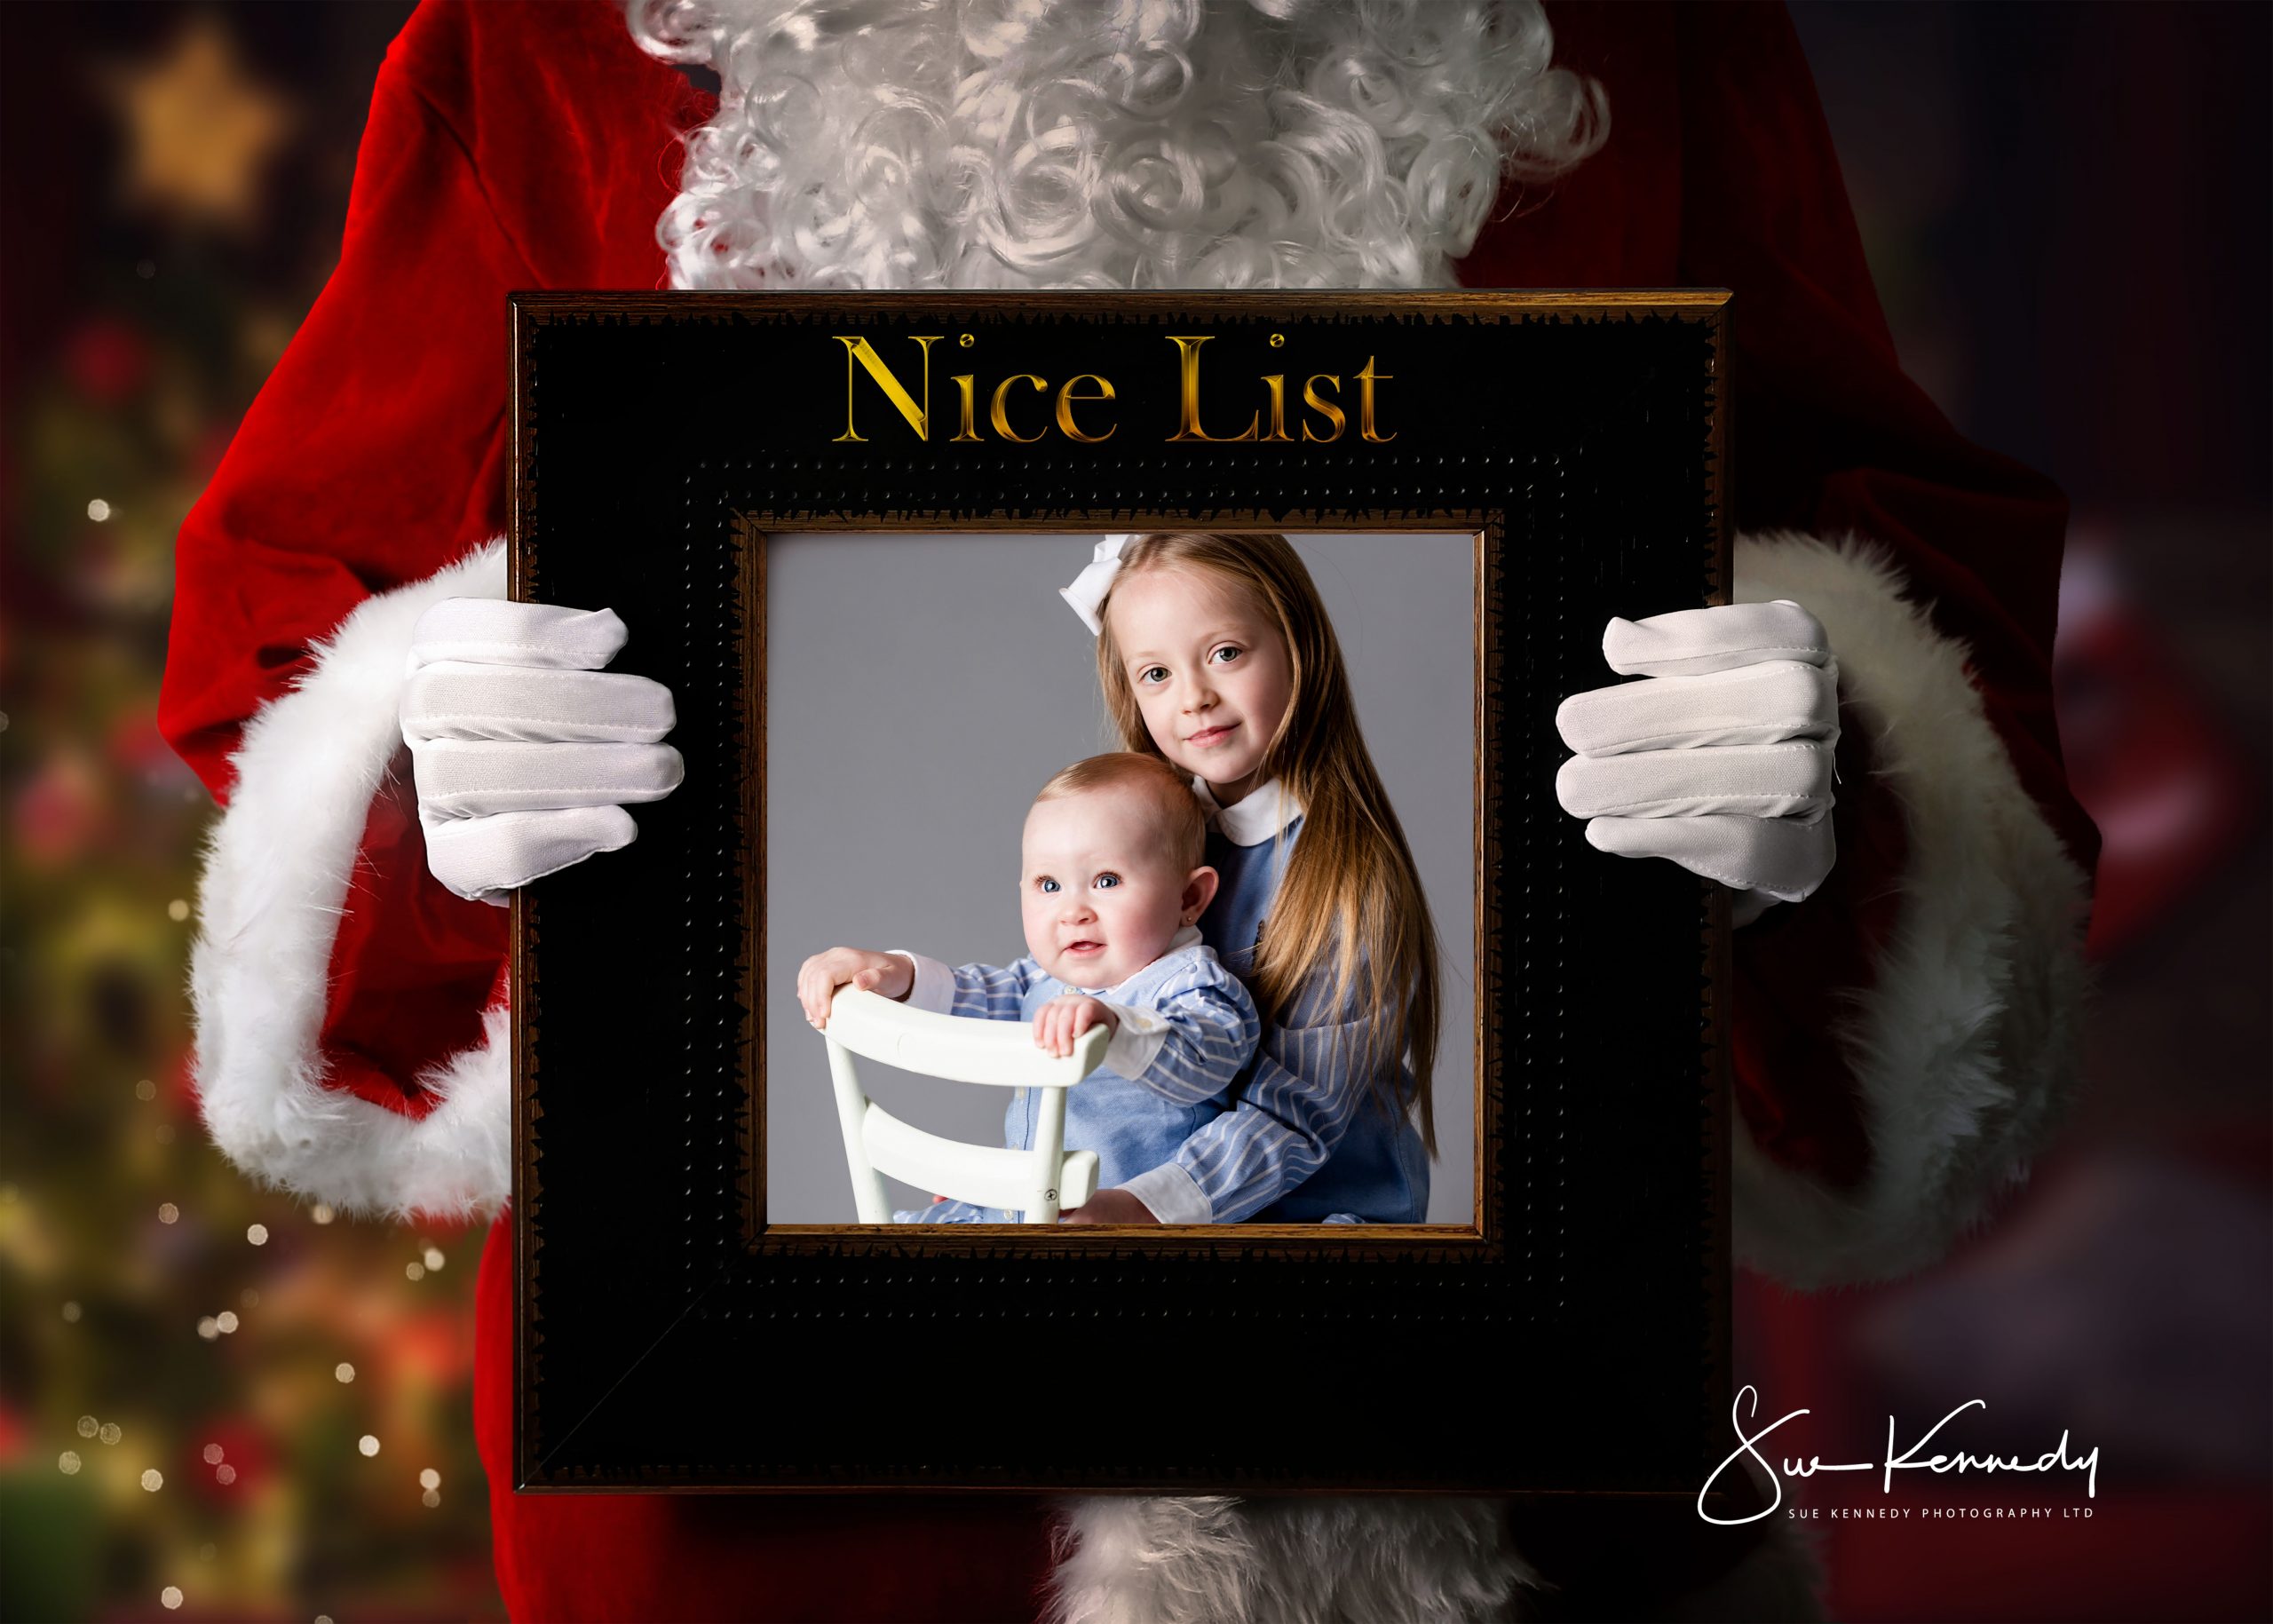 Santa holding a frame for the nice list